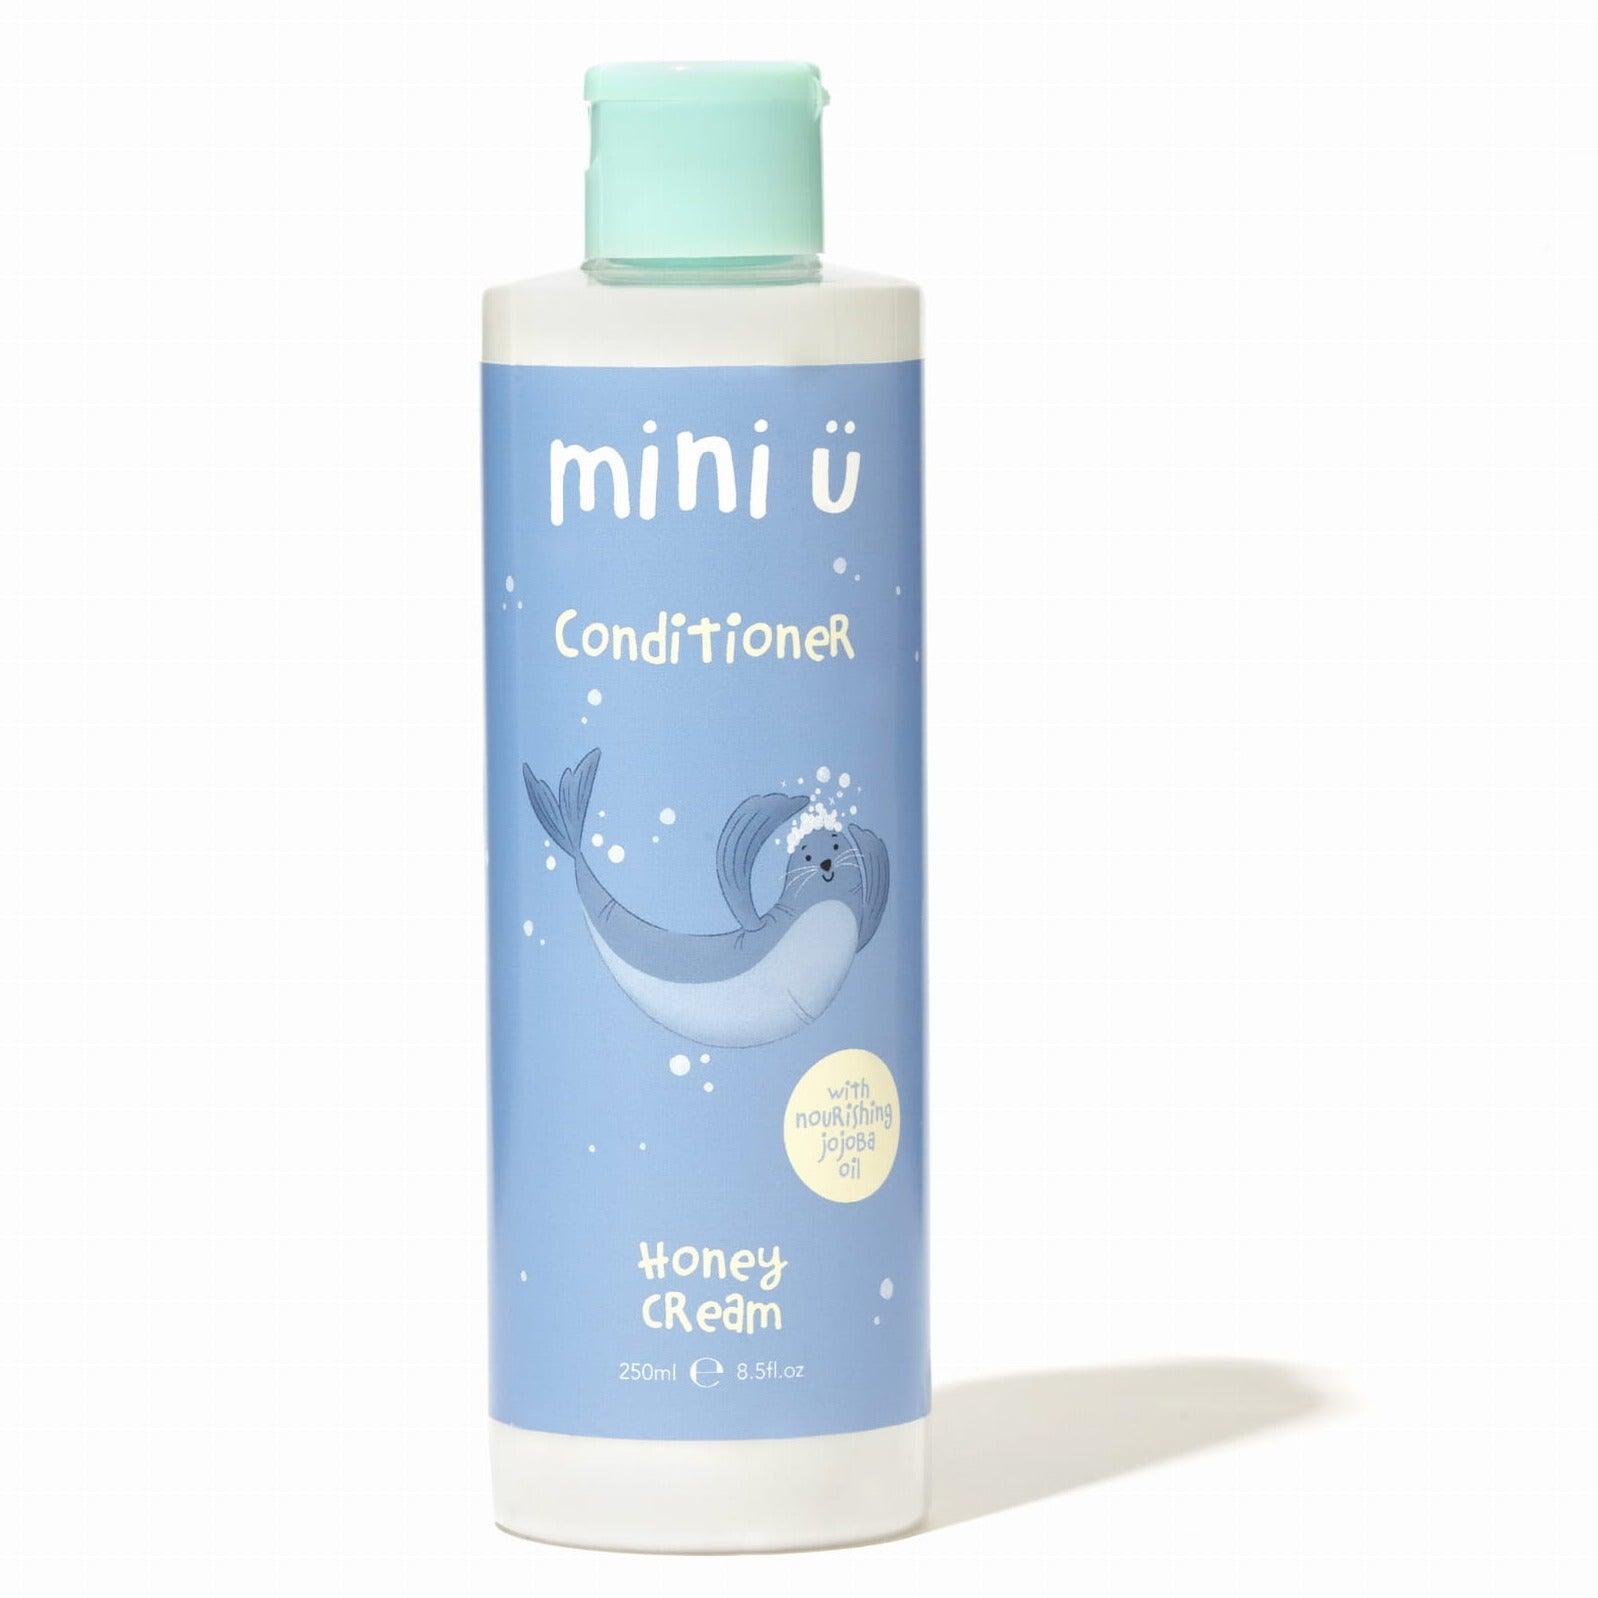 Mini-u: acondicionador de cabello natural crema de miel